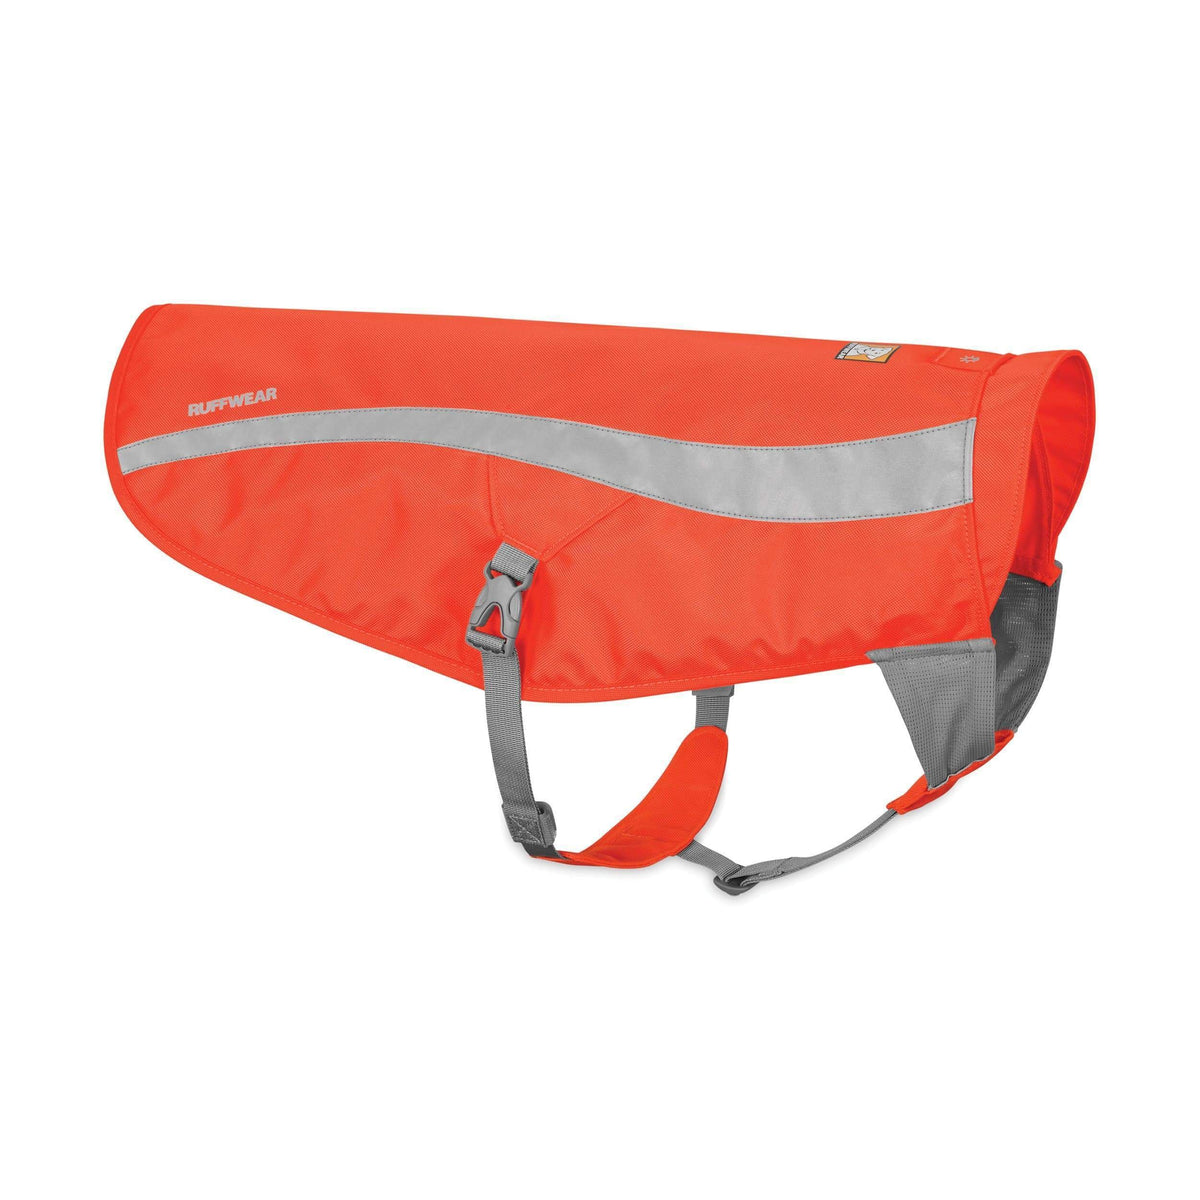 Leuchtweste Track Jacket - orange - athleticdog